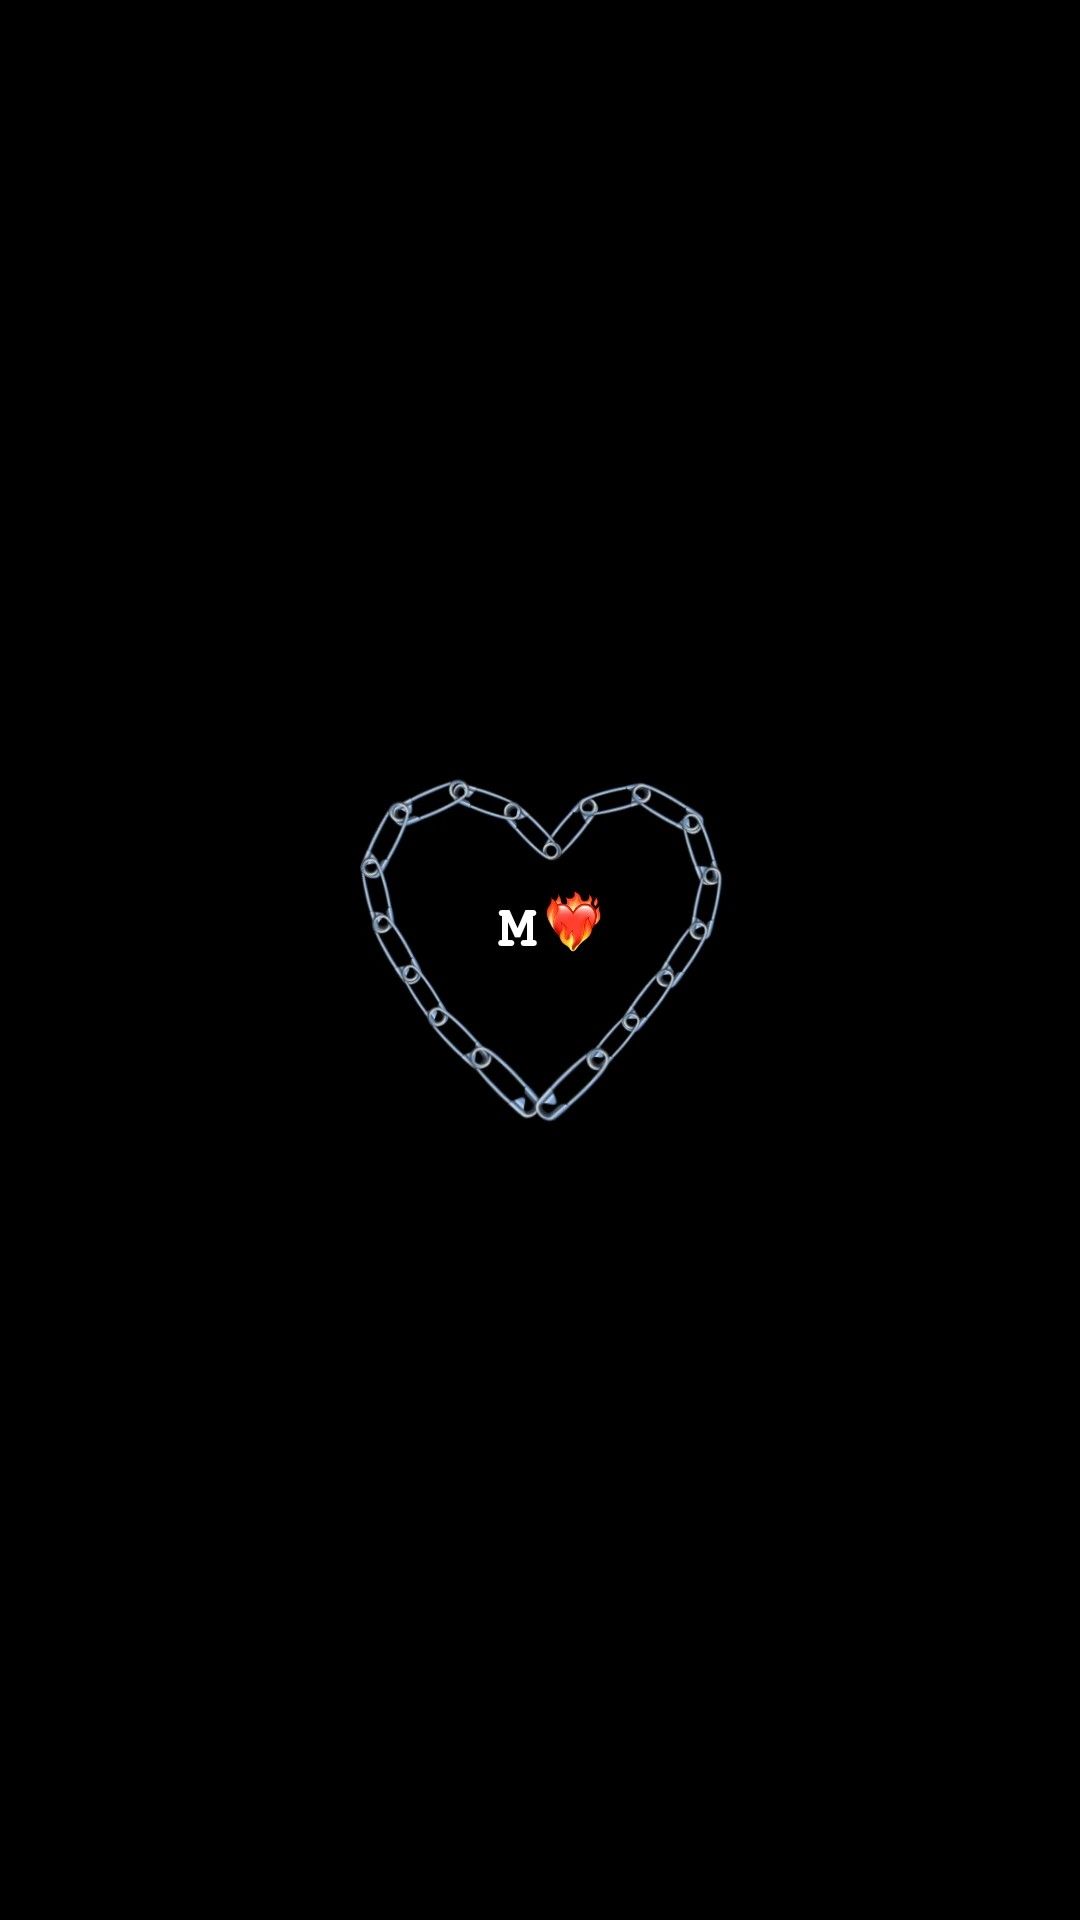 Sự kết hợp giữa hình nền đen và trái tim đỏ sáng ngời sẽ mang lại cho bạn cảm giác đầy mê hoặc và cảm thấy yêu thương được thể hiện đầy đủ.